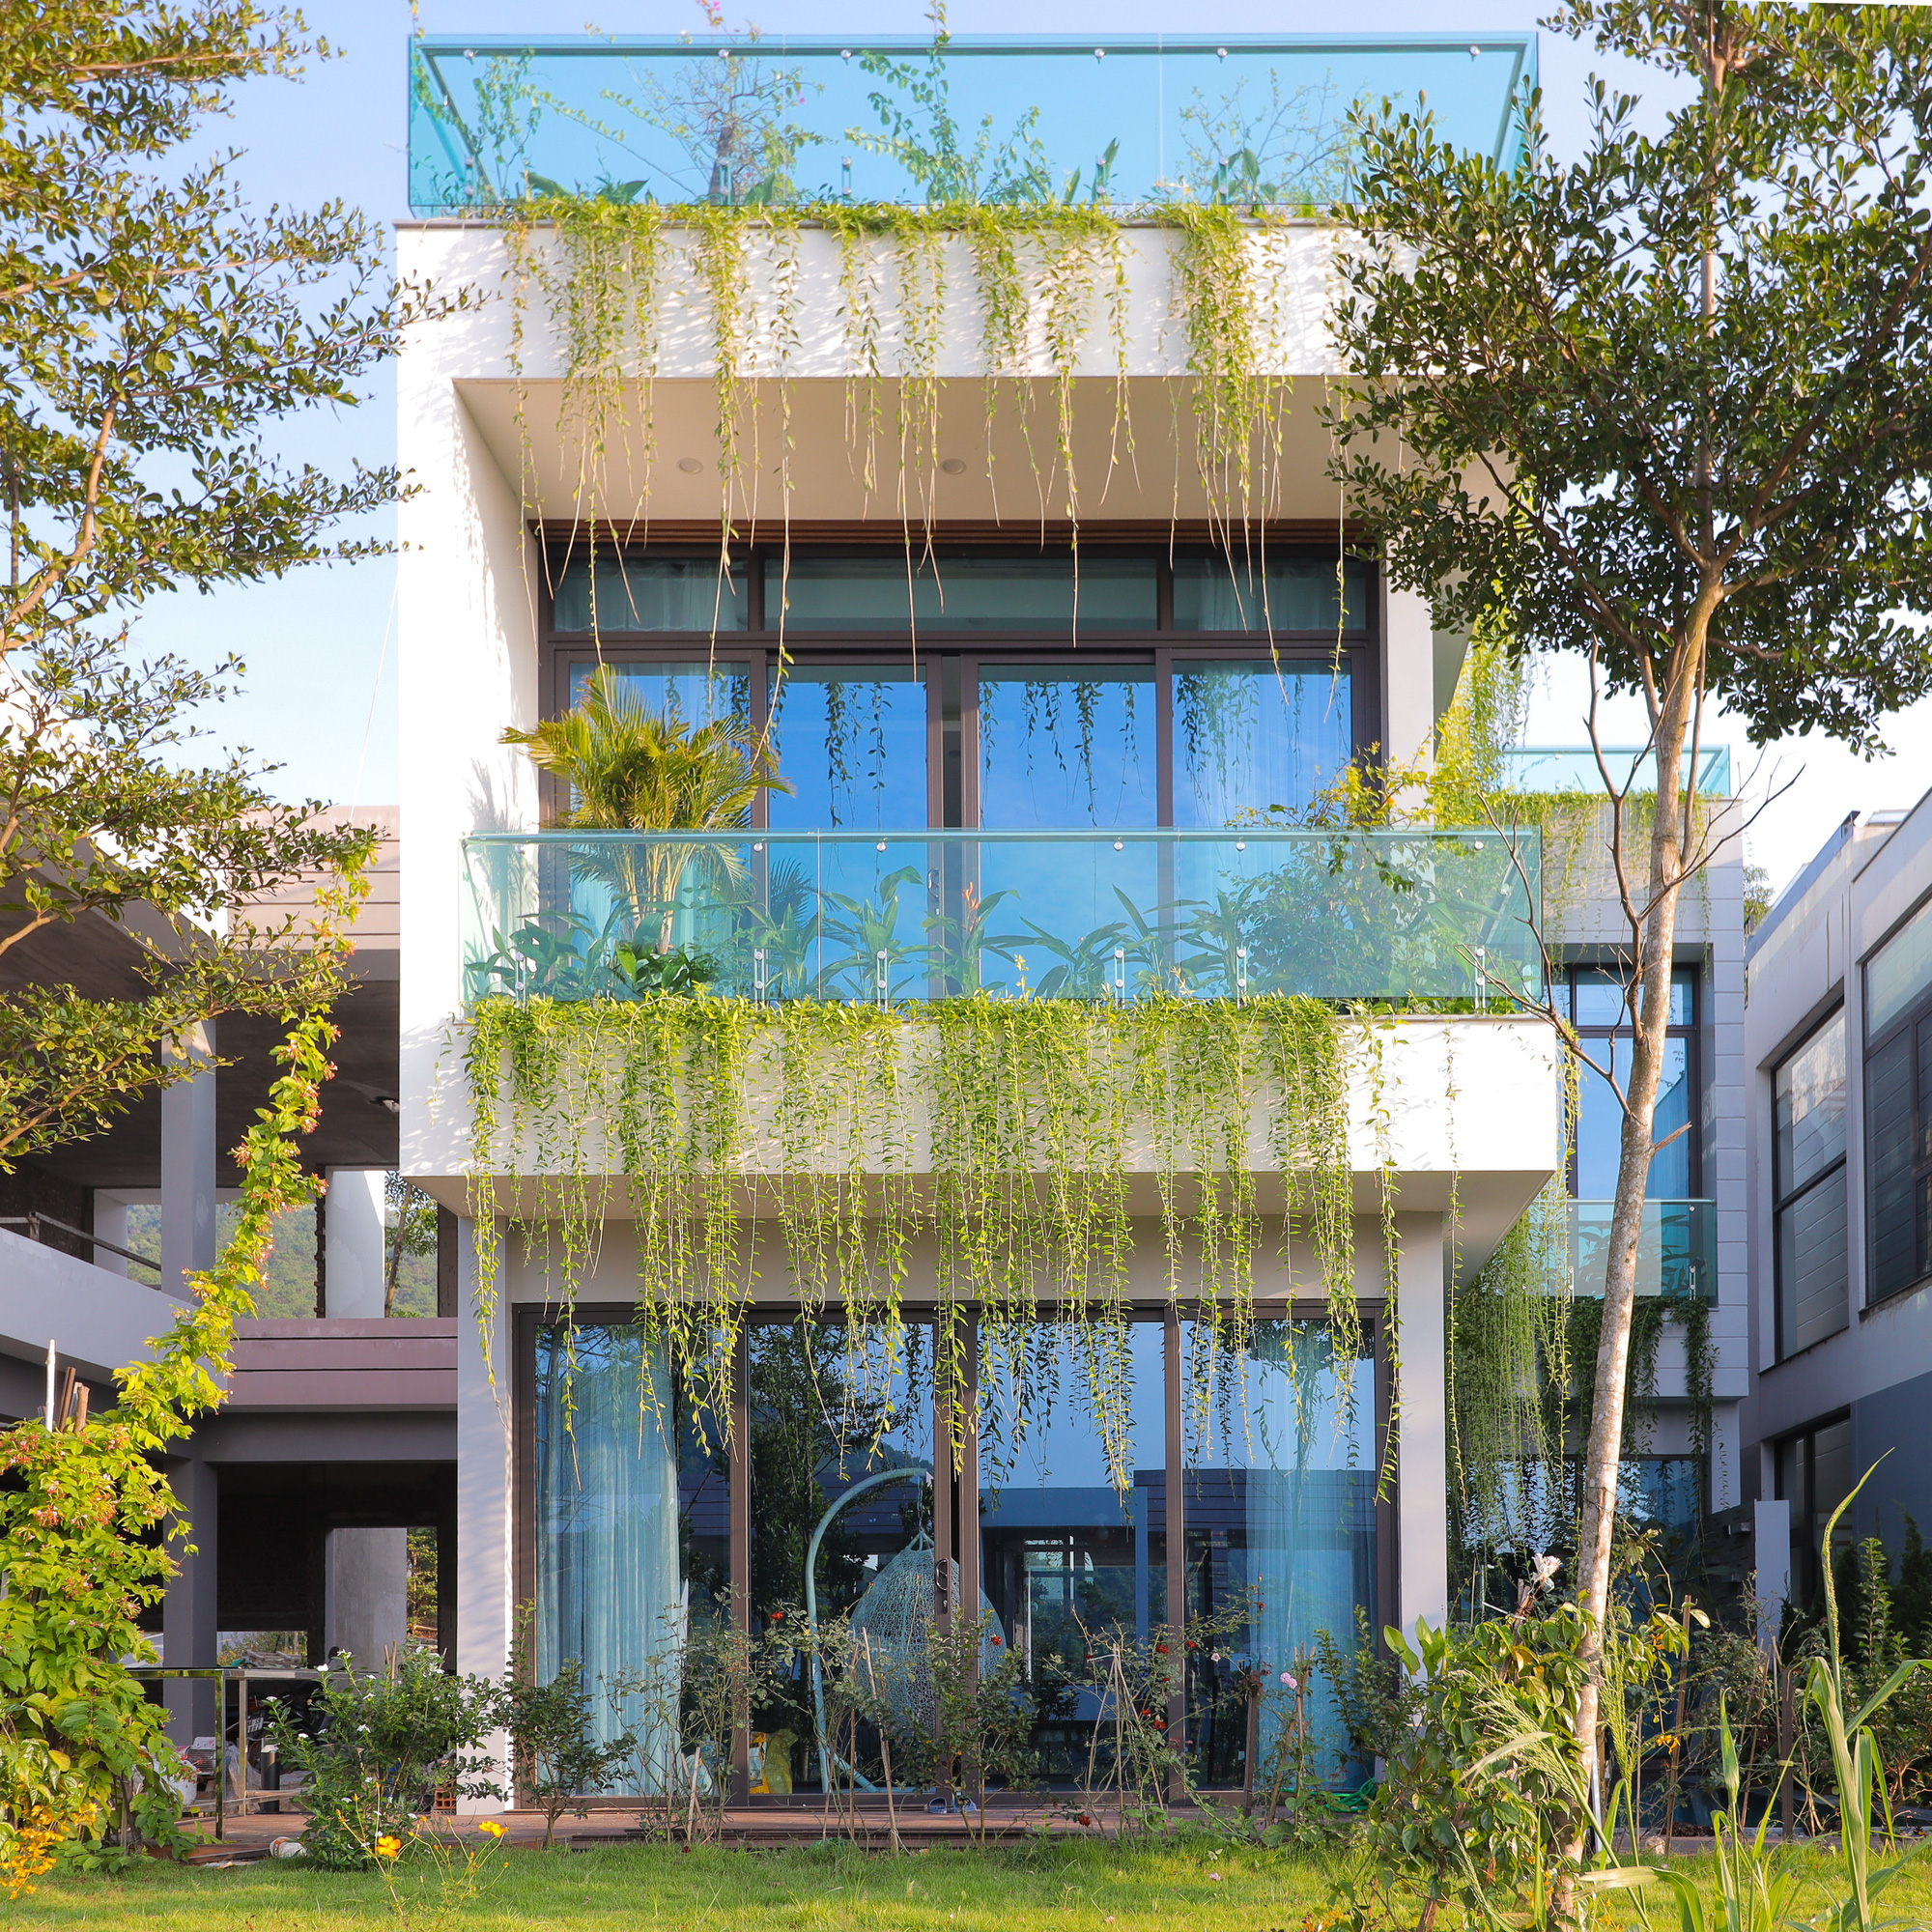 Căn nhà nhiều cây xanh với mảnh vườn bé xinh ở ngoại thành Hà Nội có chi phí hoàn thiện 3 tỷ đồng - Ảnh 2.